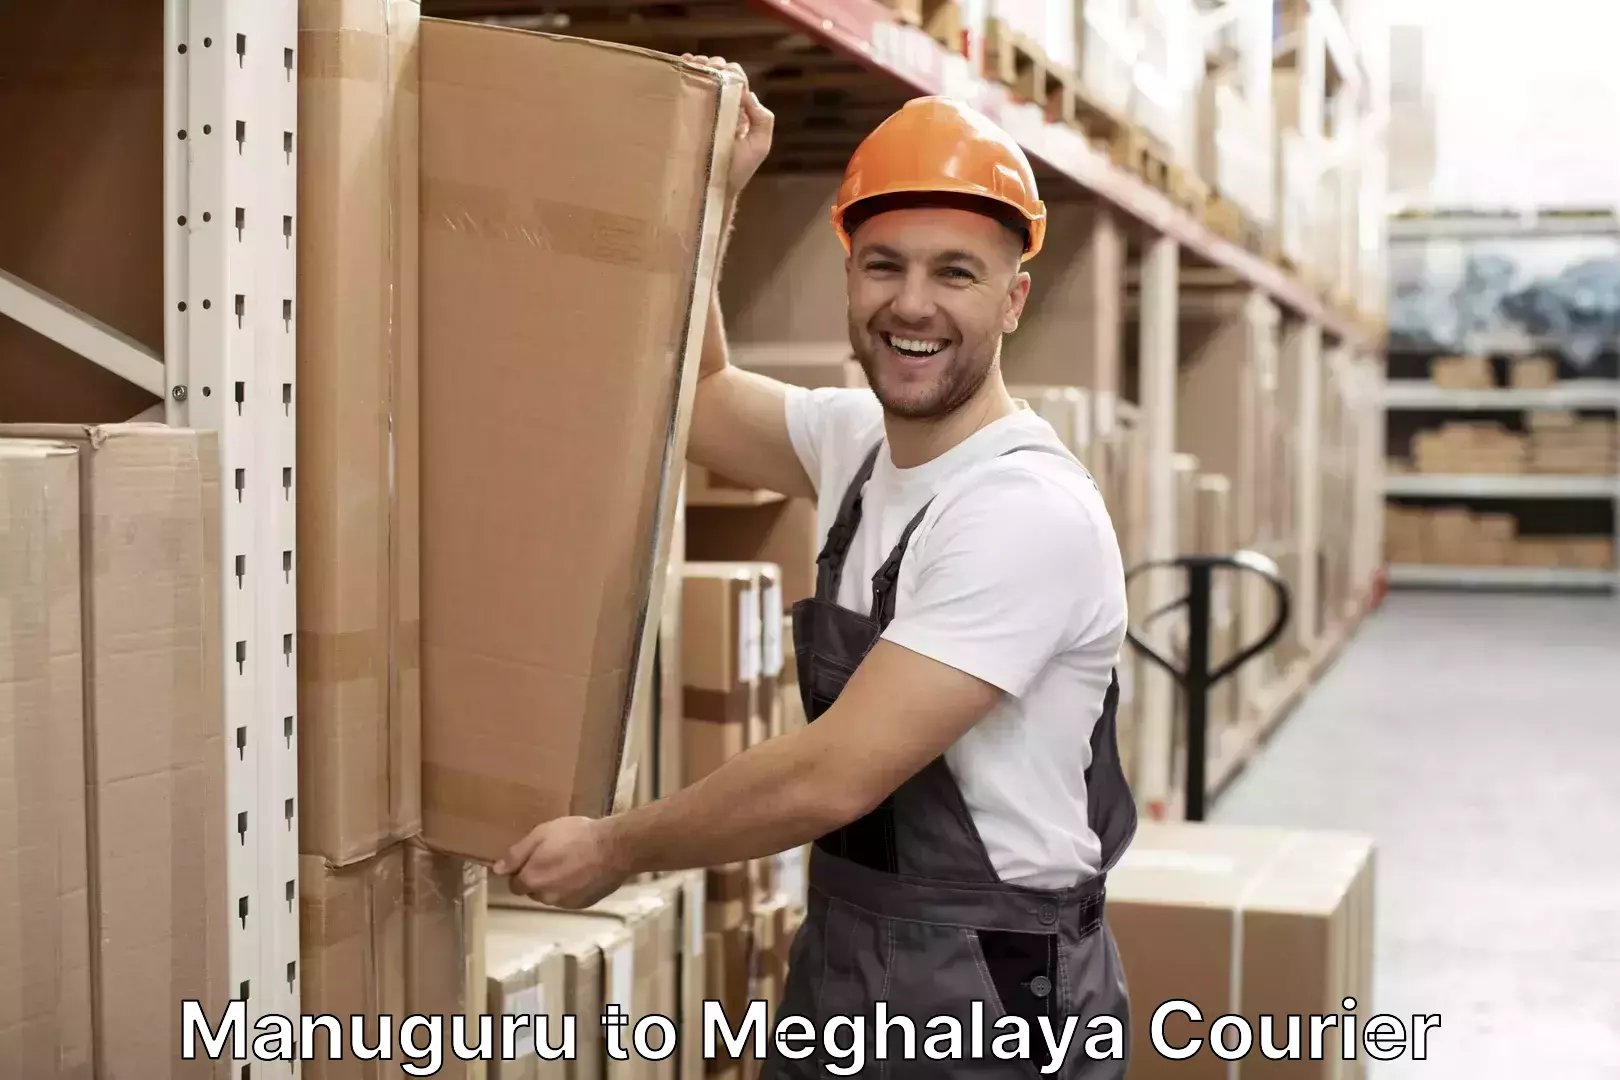 Baggage shipping experts Manuguru to Meghalaya